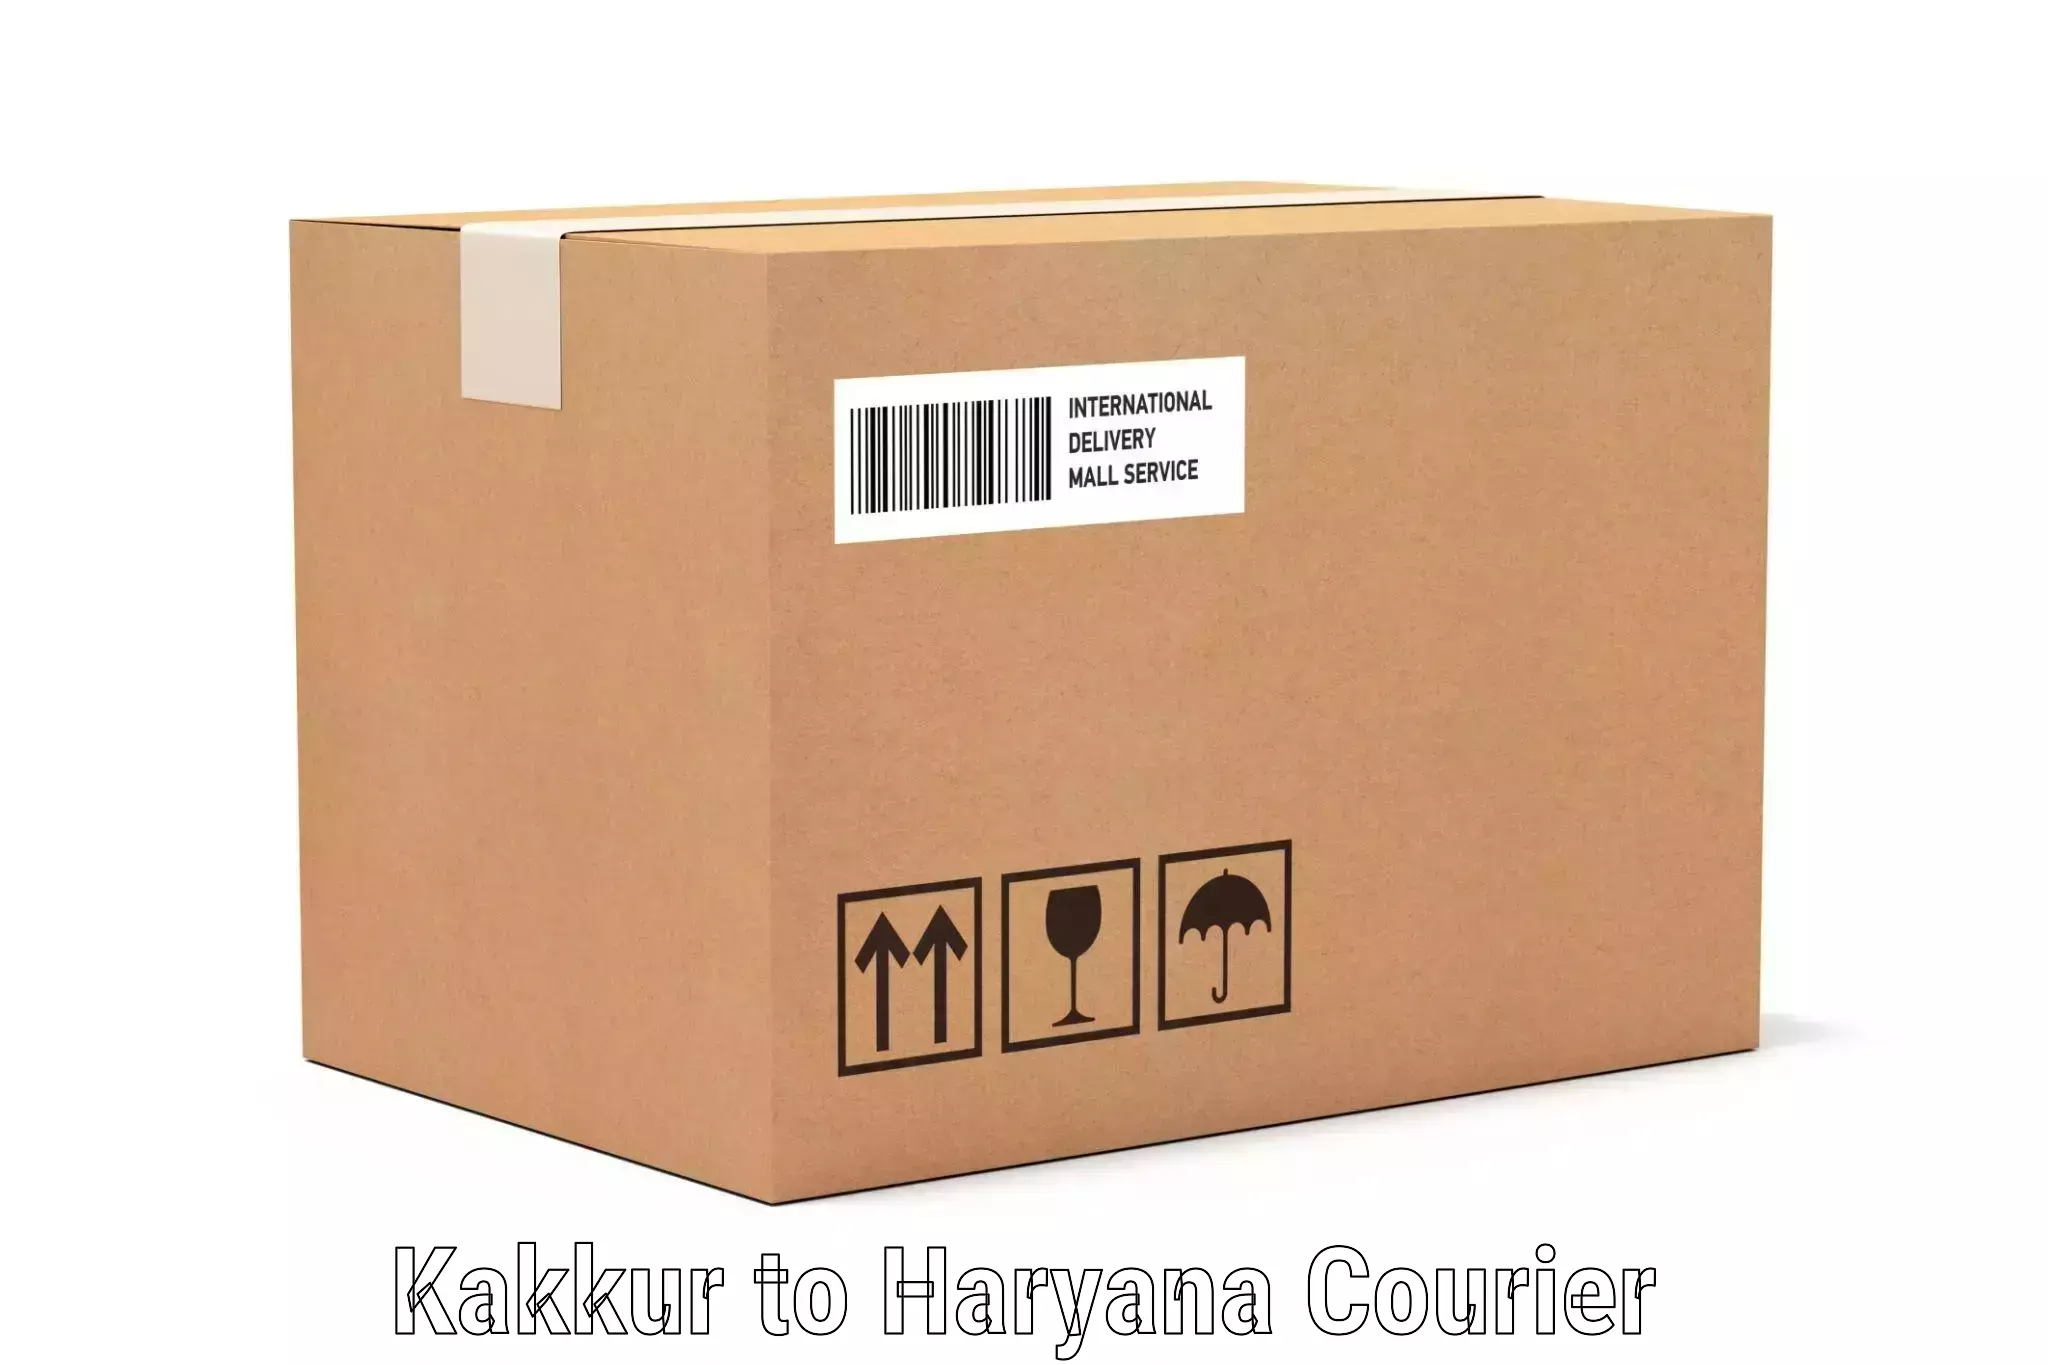 Luggage delivery optimization Kakkur to Rewari